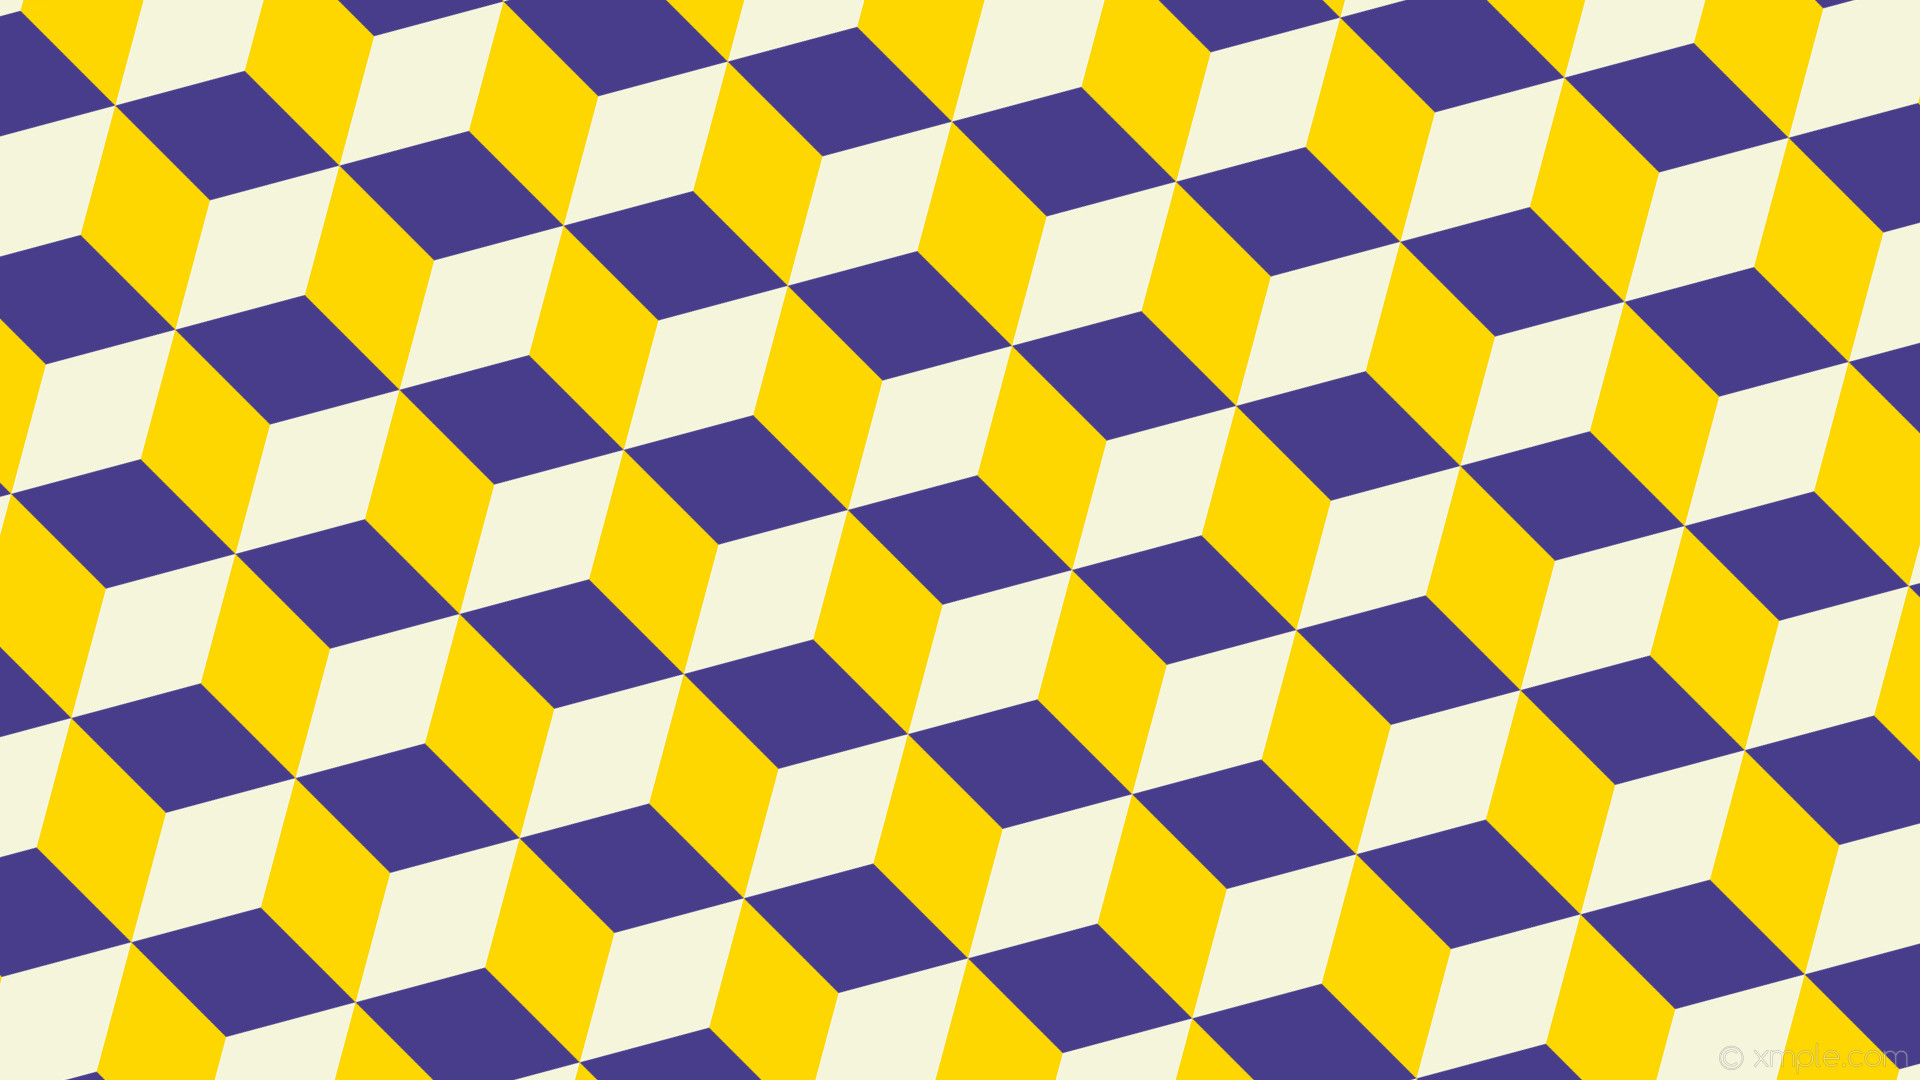 1920x1080 wallpaper 3d cubes purple white yellow dark slate blue gold beige #483d8b  #ffd700 #